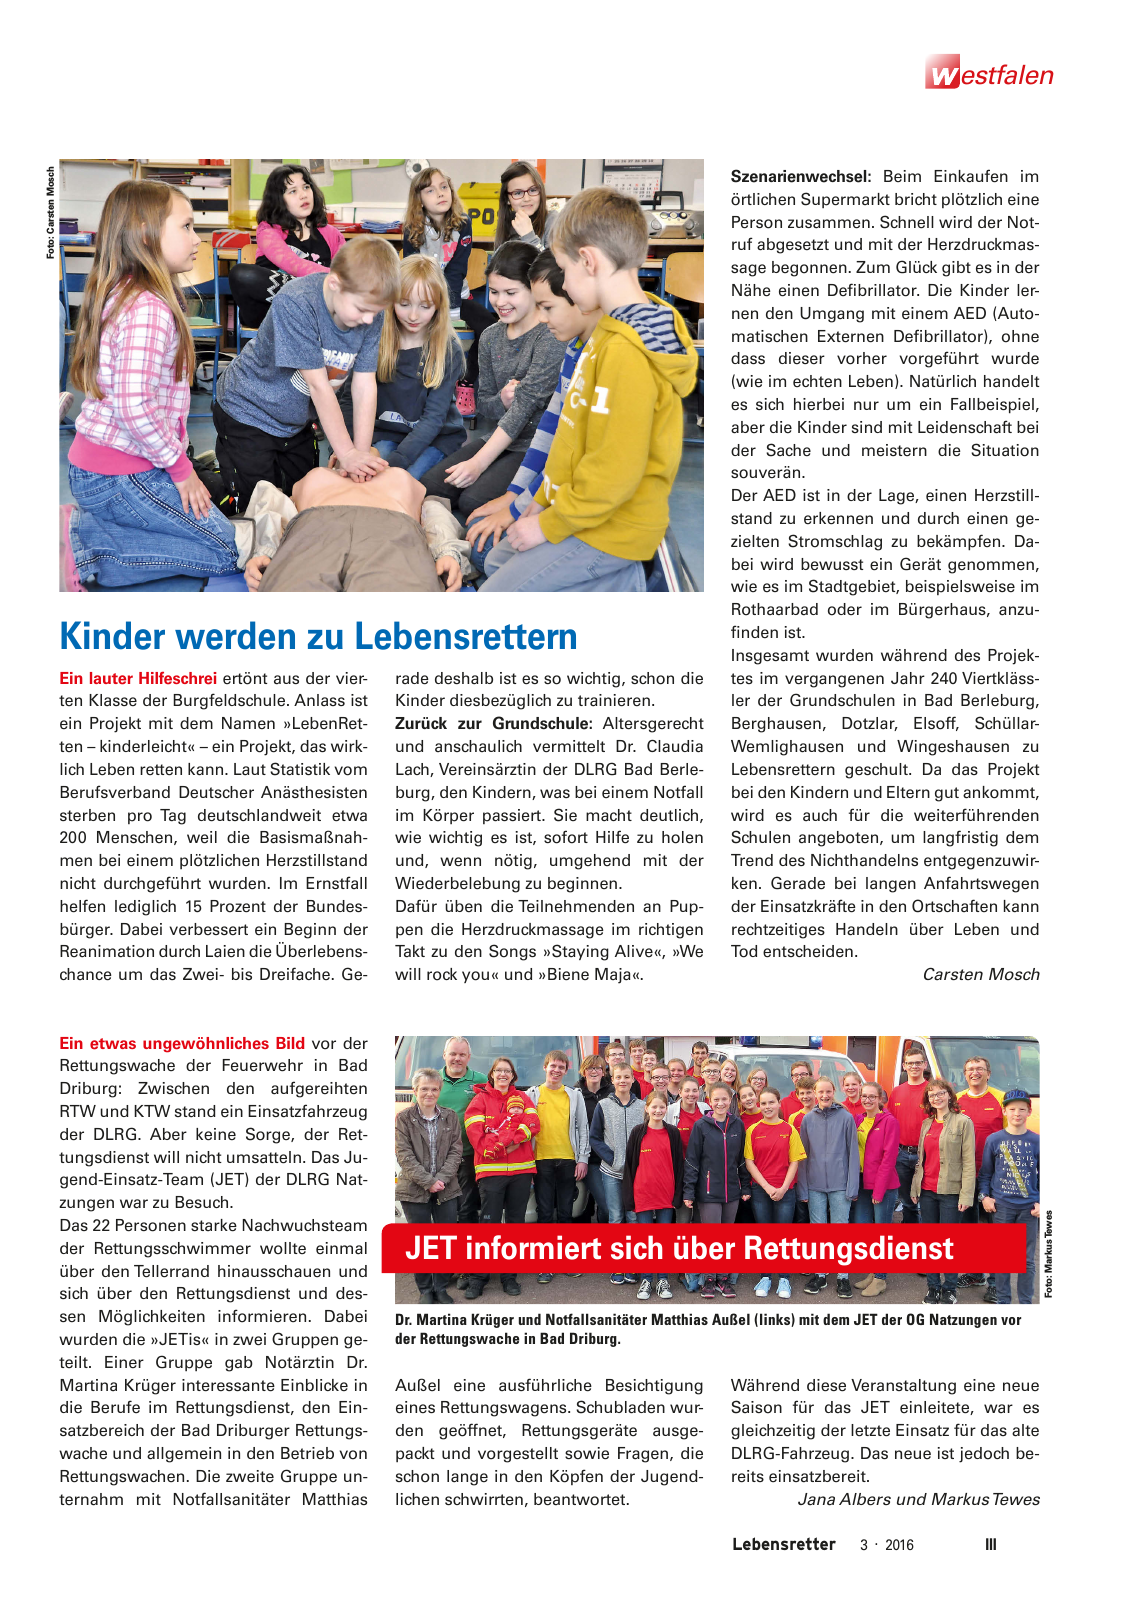 Vorschau Lebensretter 3/2016 - Regionalausgabe Westfalen Seite 5